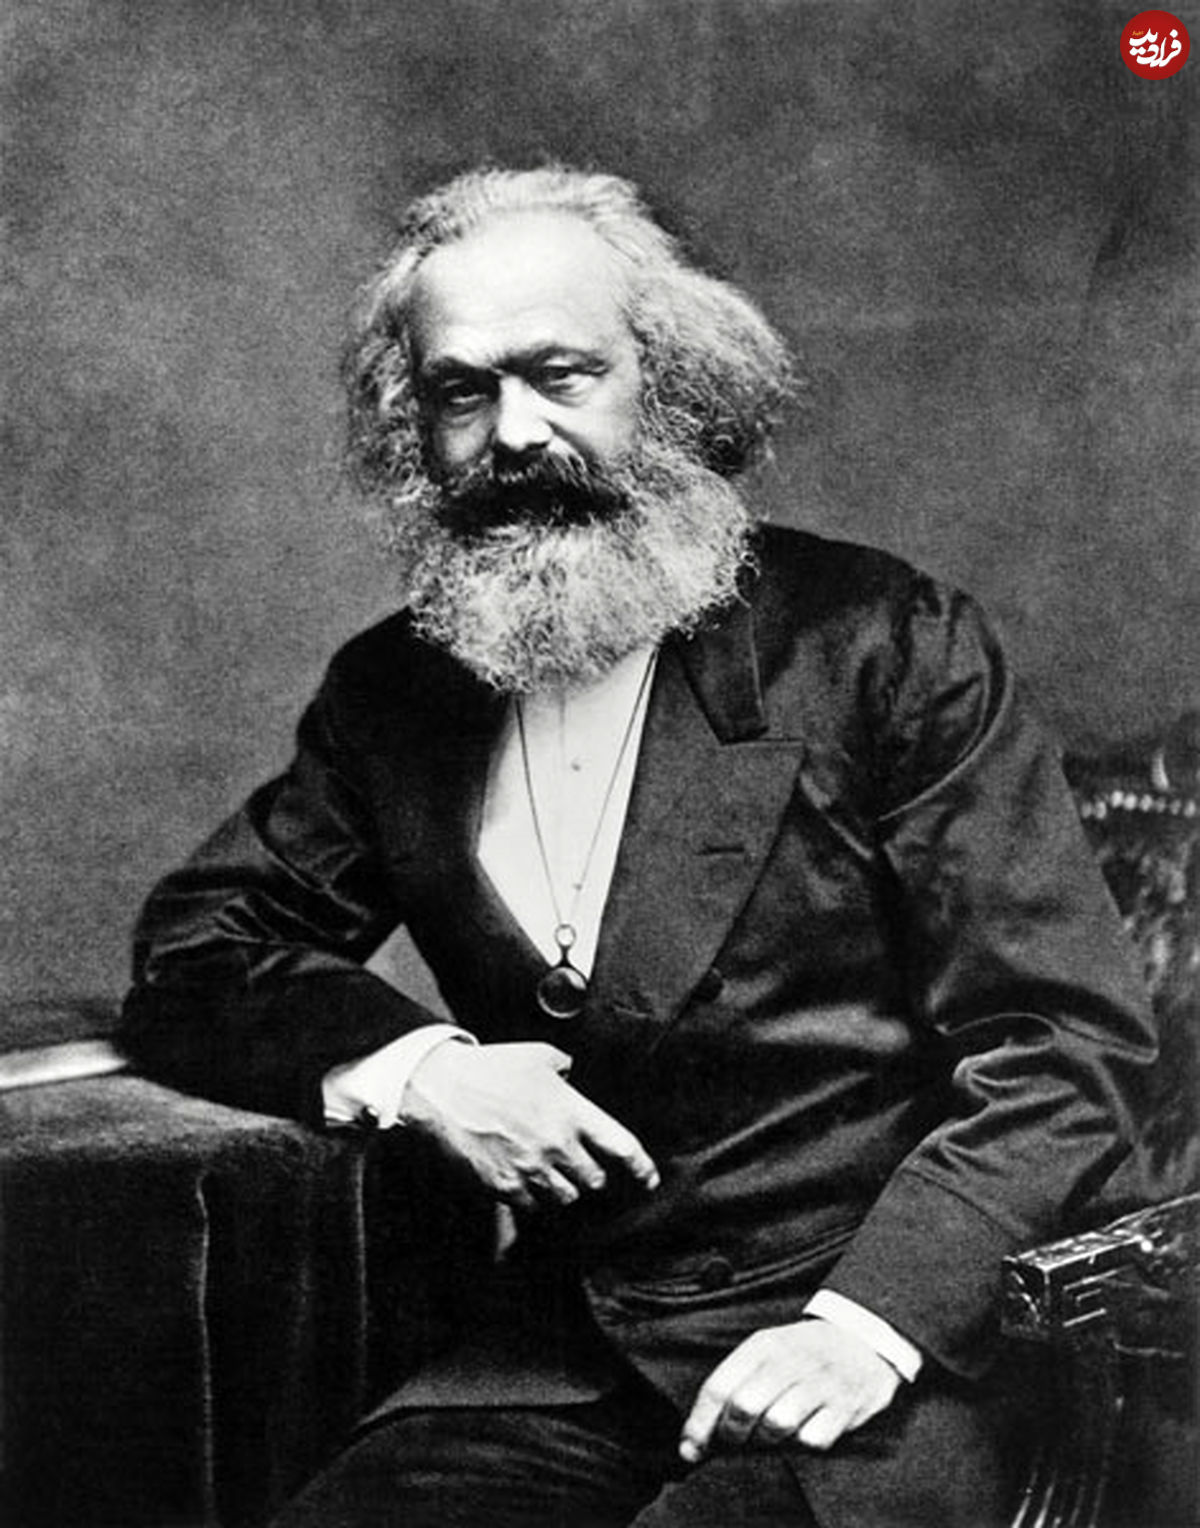 مارکس ؛ "فلسفه تاریخ" را جایگزین "تاریخ" کرد!؟